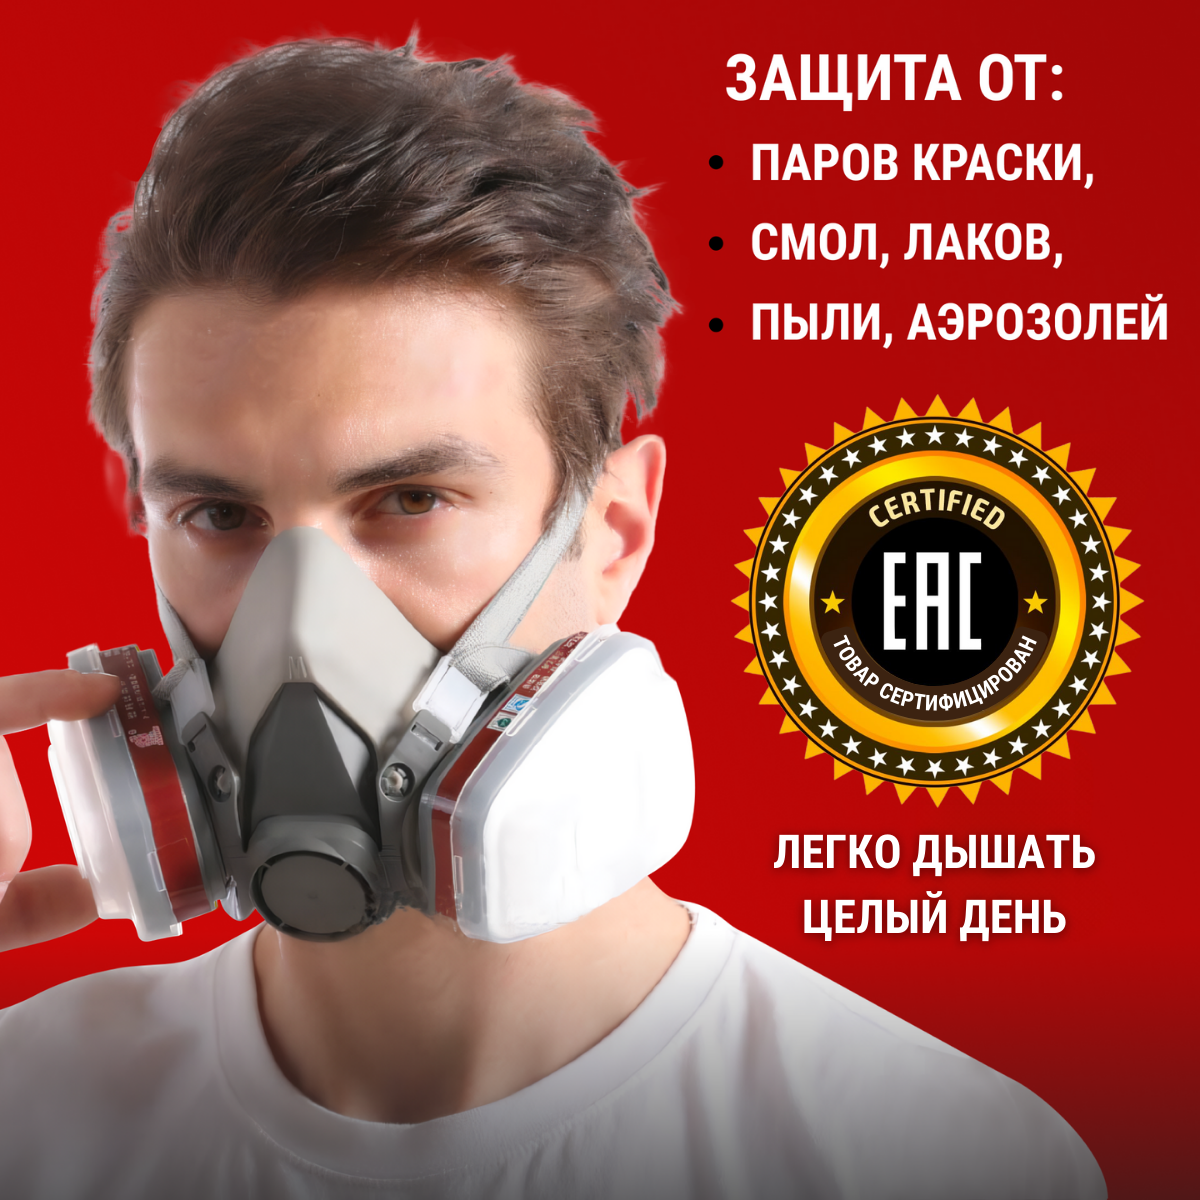 Профессиональный респиратор противогаз маска защитная 6200 замена 3М с угольным фильтром распиратор от краски пыли аллергии